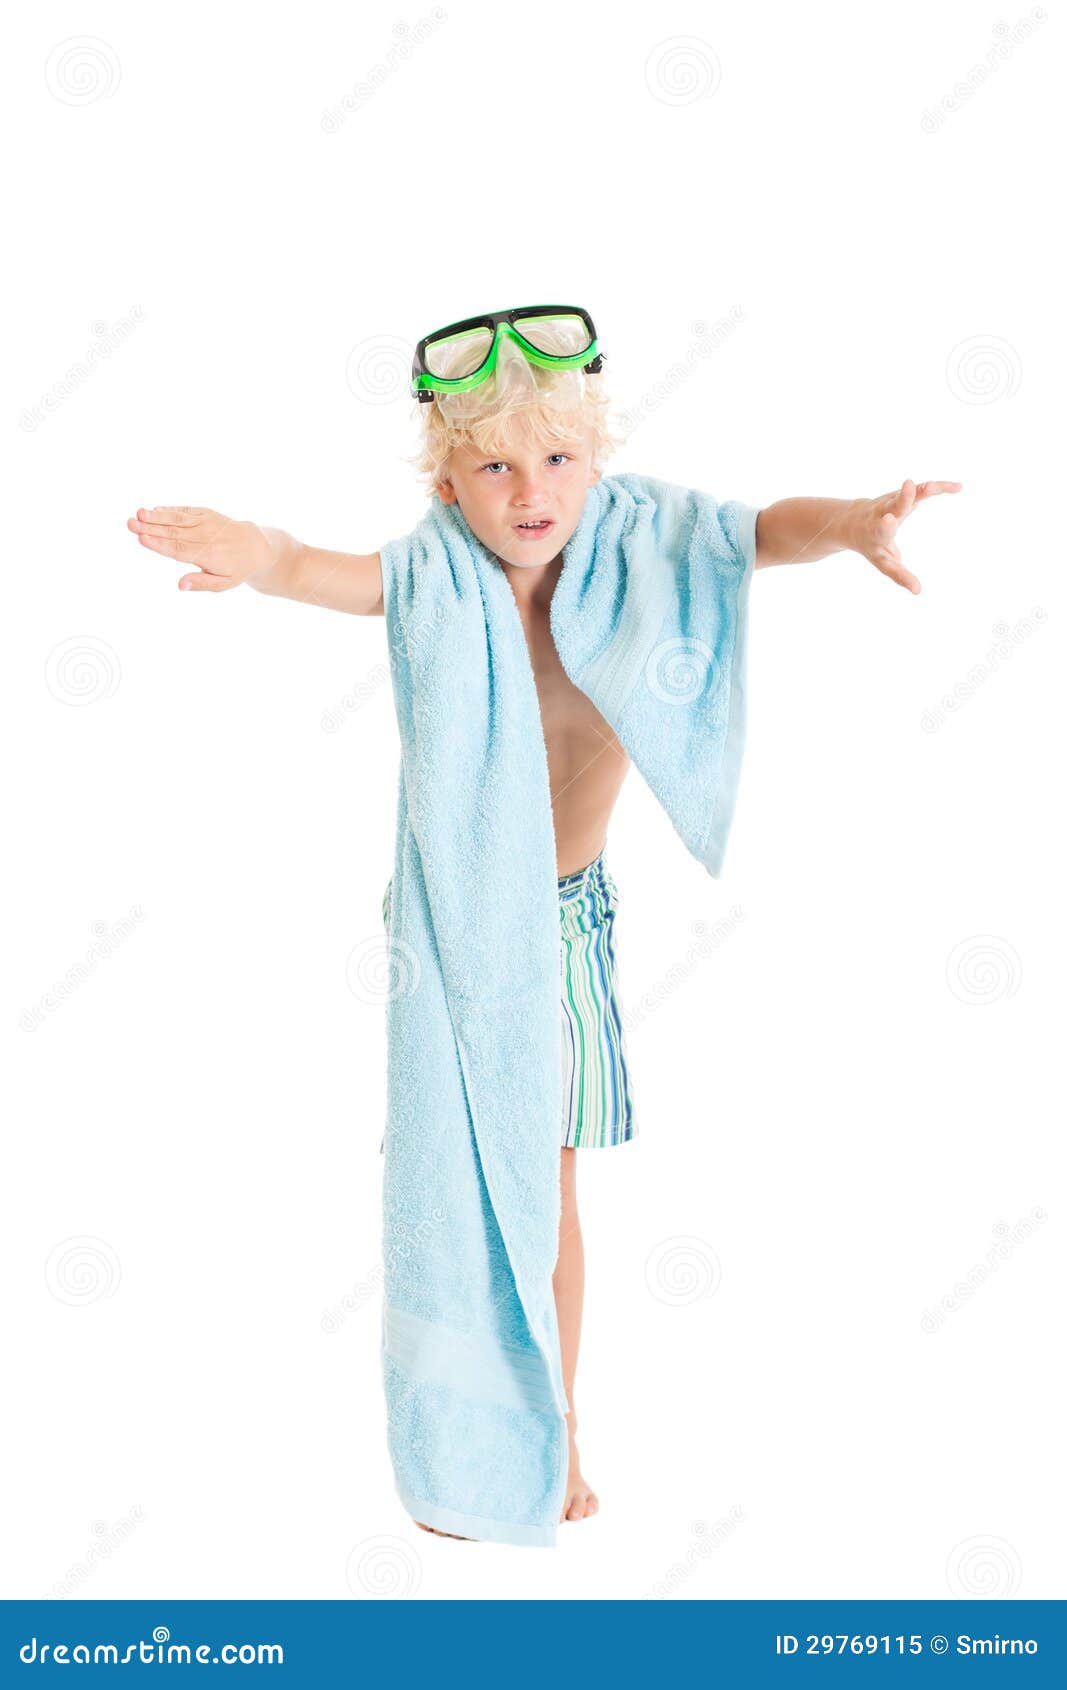 Прикрылась полотенцем. Мальчик в полотенце. Юная прикрывается полотенцем. Ребенок в полотенце и очках. Фотосессия ребенка в полотенце.